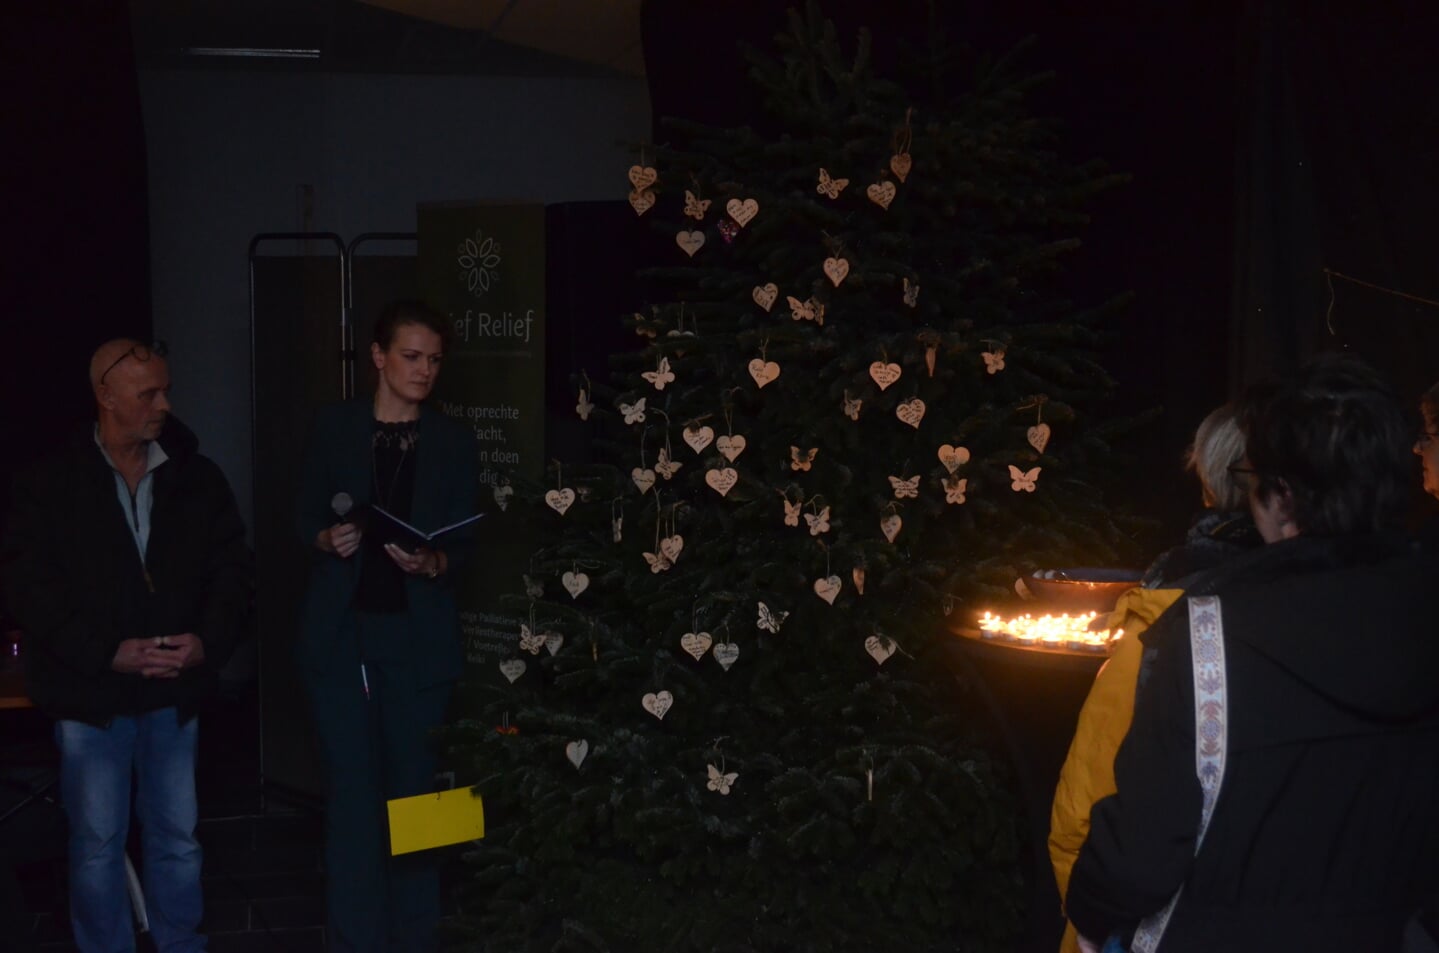 De namen van overleden dierbaren worden genoemd en de lichtjes in de kerstboom worden ontstoken.